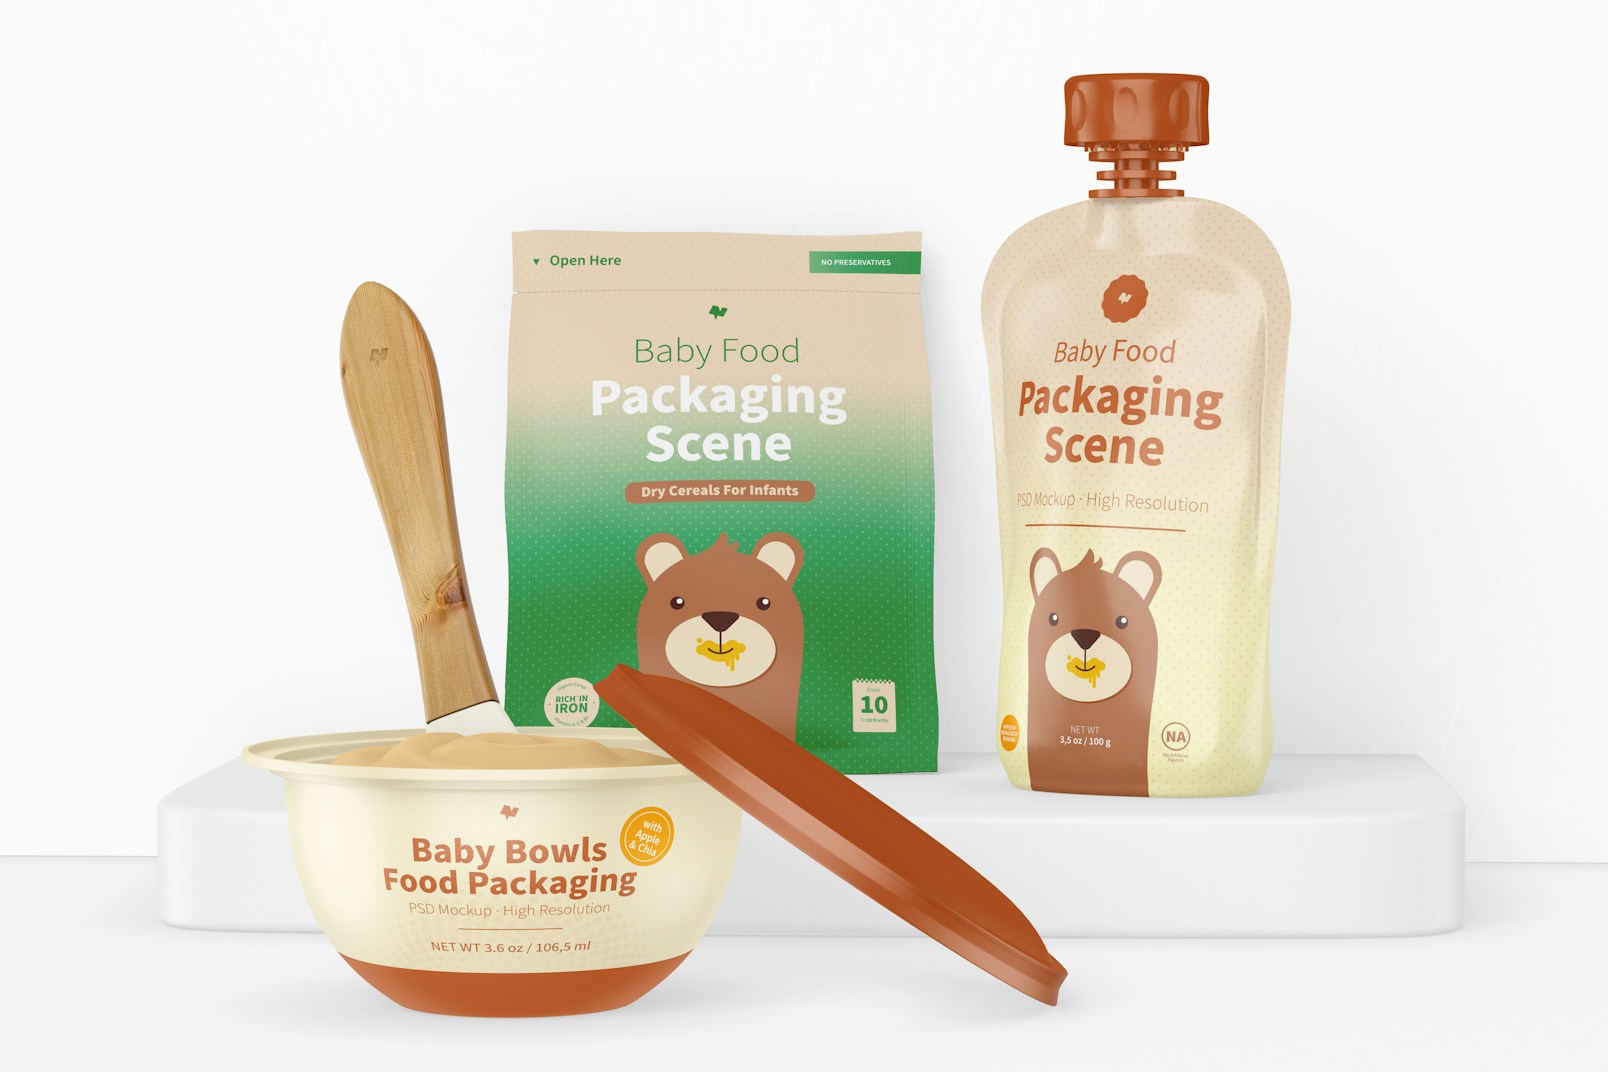 Baby Food Packaging Scene Mockup